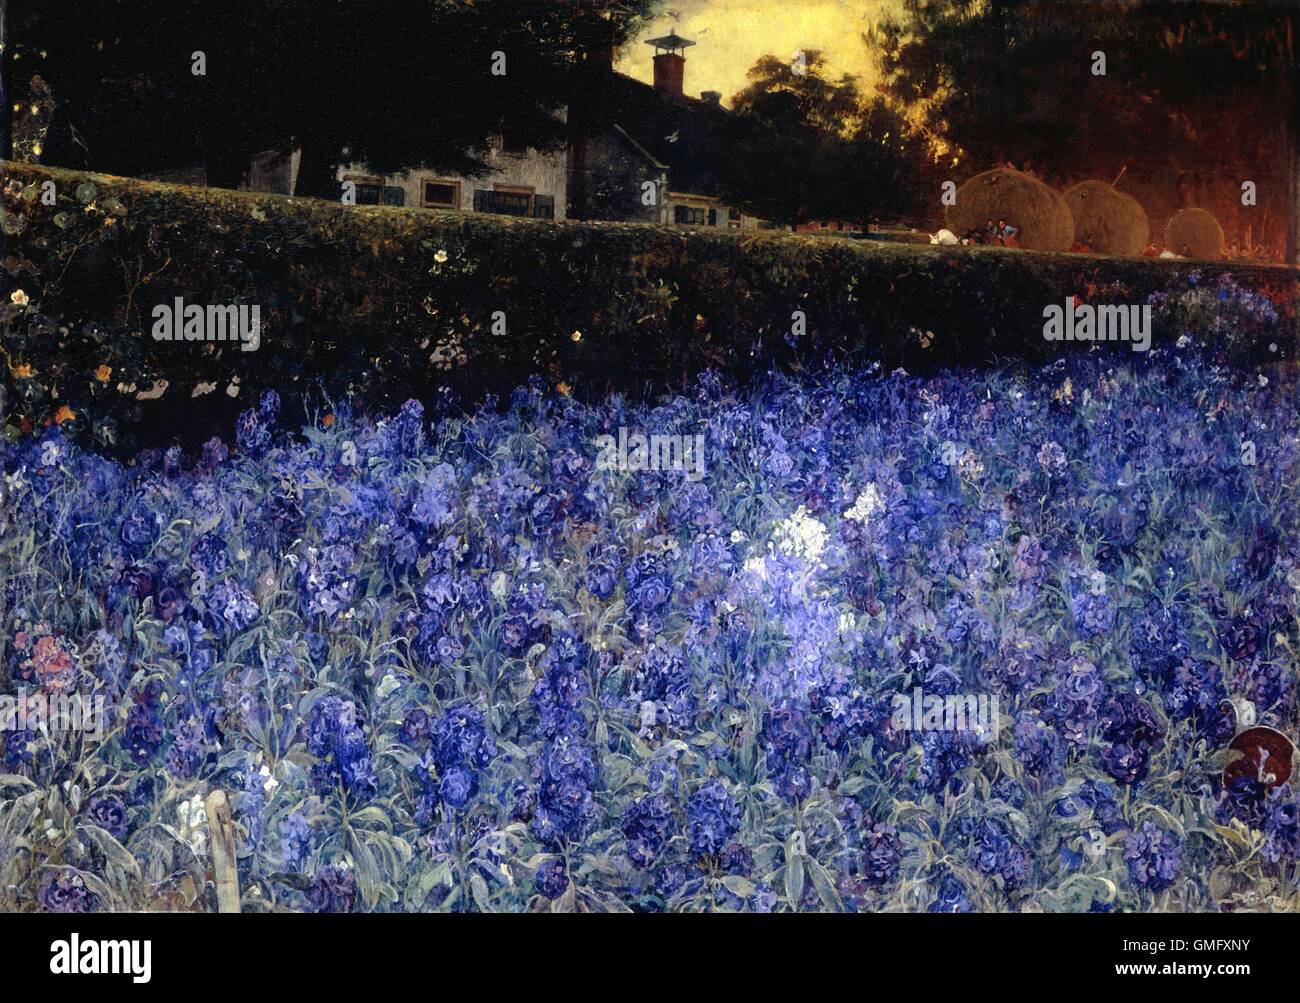 Sommer Üppigkeit, durch Jac van Looij, c. 1890-1910, niederländische Malerei, Öl auf Leinwand. Bett aus blau-violetten Blüten gegen die Wand einer Hochstraße mit Häusern und drei Pferden gezogenen Heu Wagen (BSLOC 2016 2 274) Stockfoto